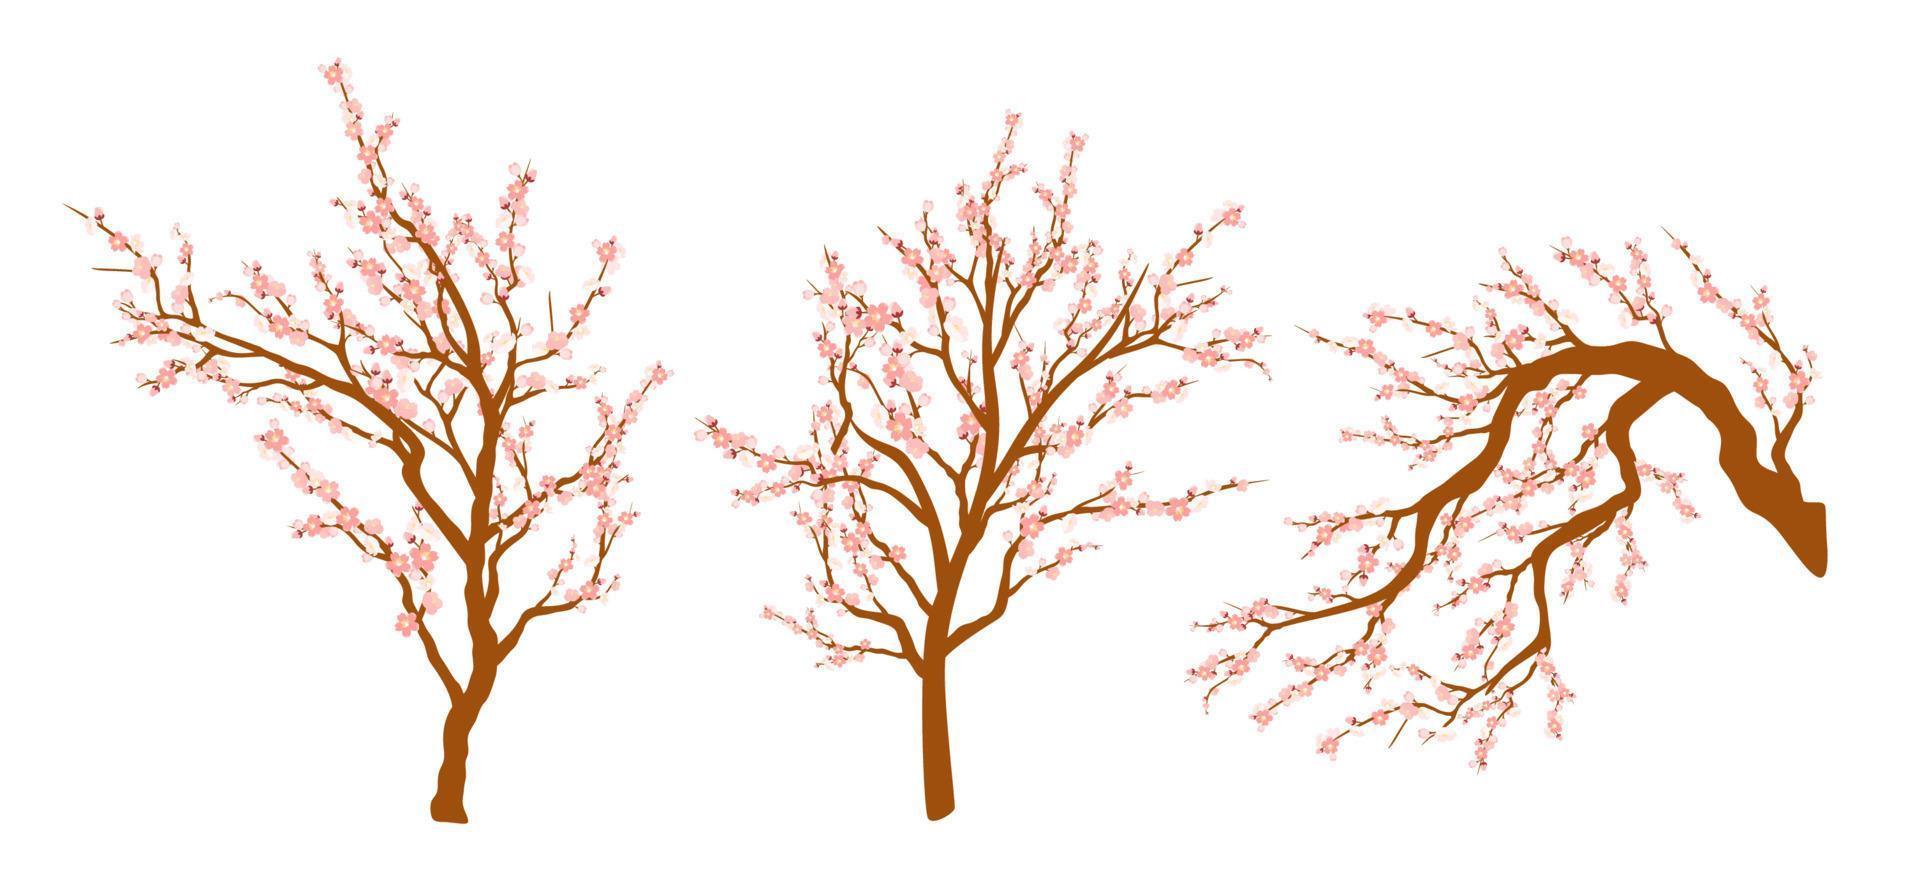 ensemble de branches d'arbres en fleurs de printemps, branche d'arbre à fleurs roses. sakura ou cerise. vecteur